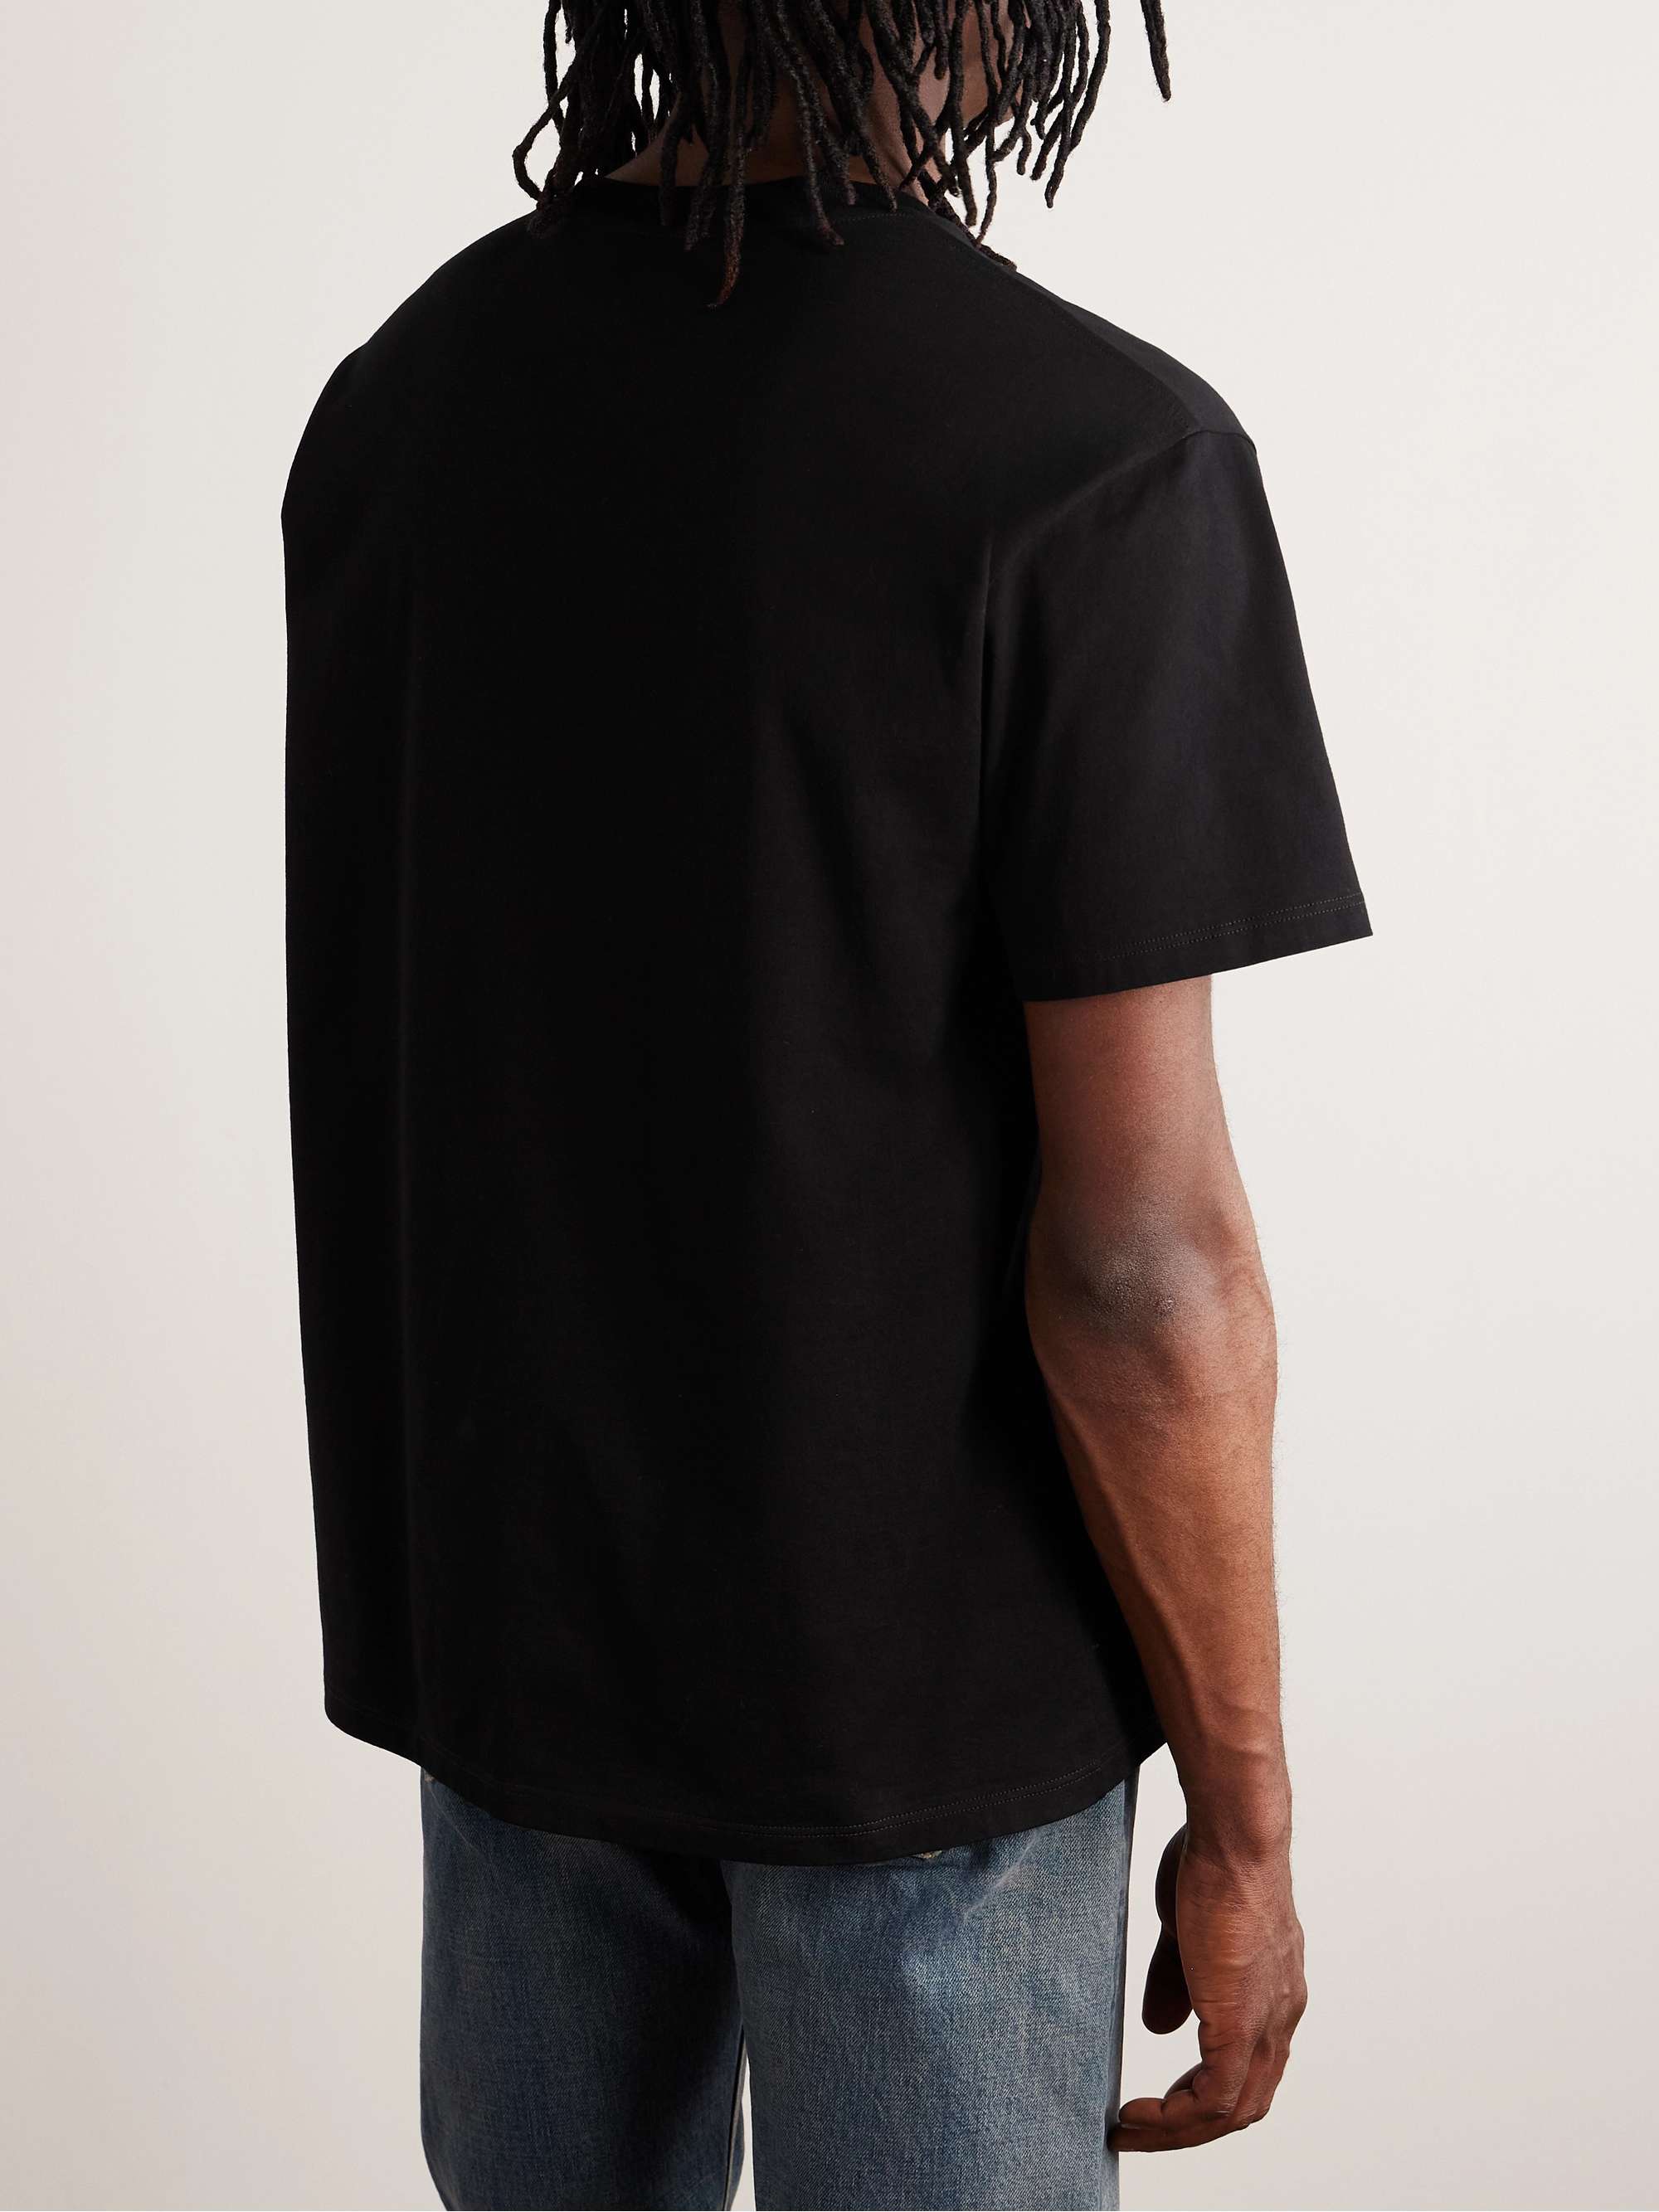 CELINE HOMME Embellished Logo-Embroidered Cotton-Jersey T-Shirt for Men ...